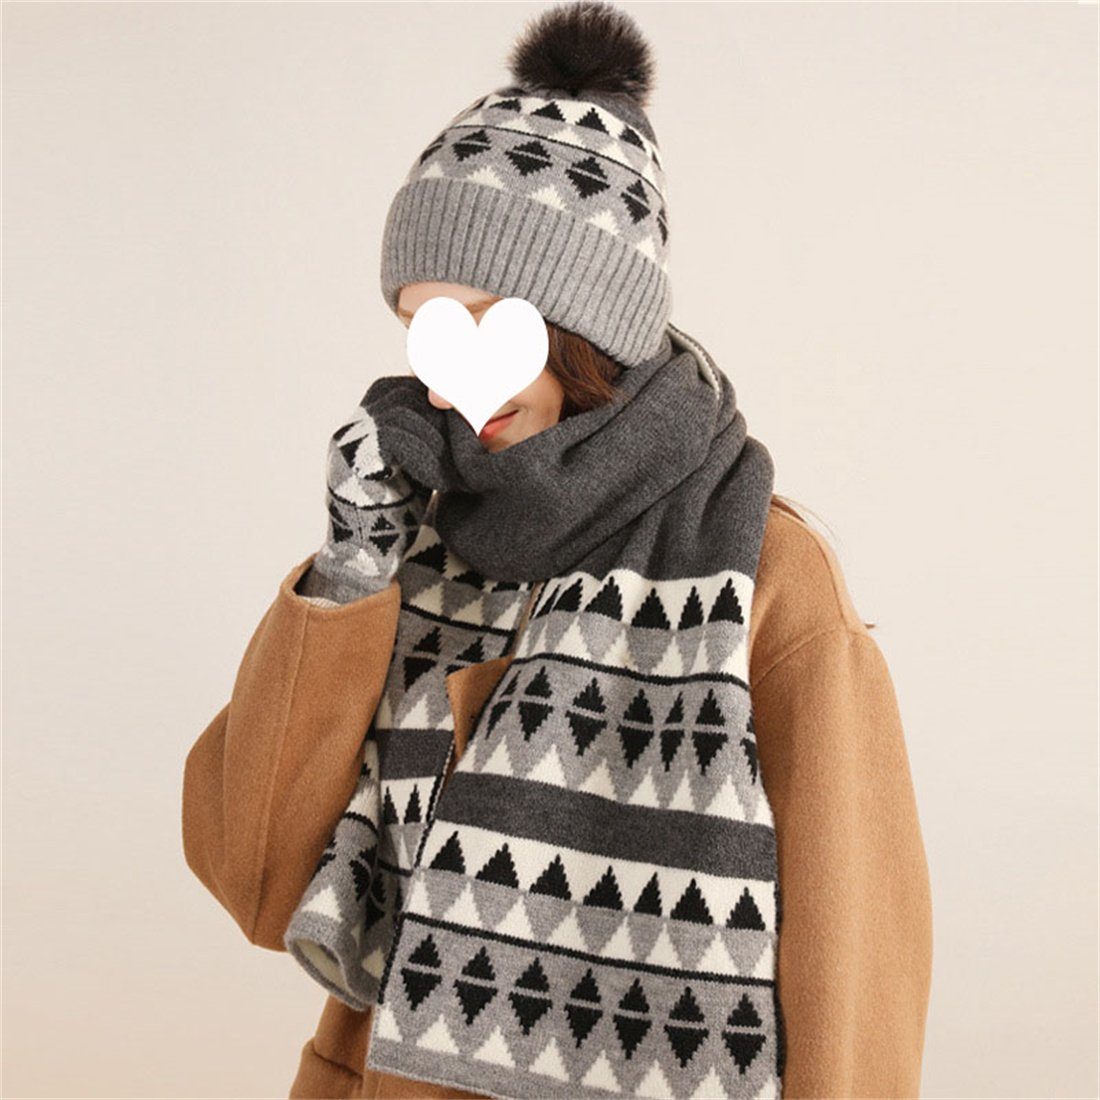 DÖRÖY Strickmütze Winter Warme Mütze + Schal + Handschuhe 3 St., Kälteschutz Warmes Set Schwarz